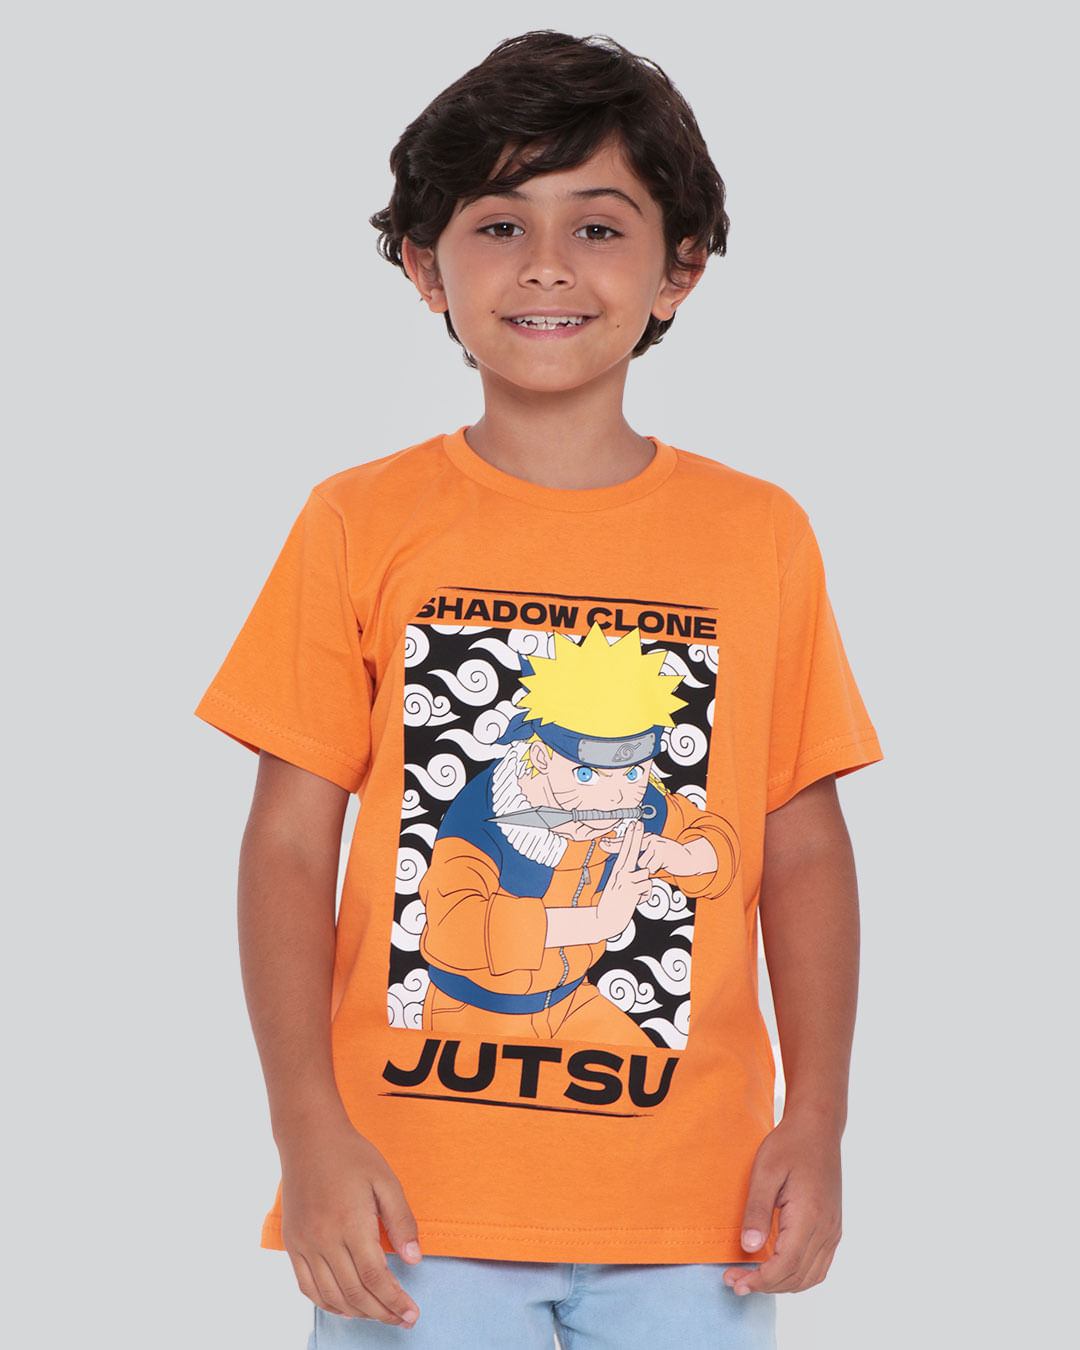 Camiseta Infantil Estampa Naruto Laranja